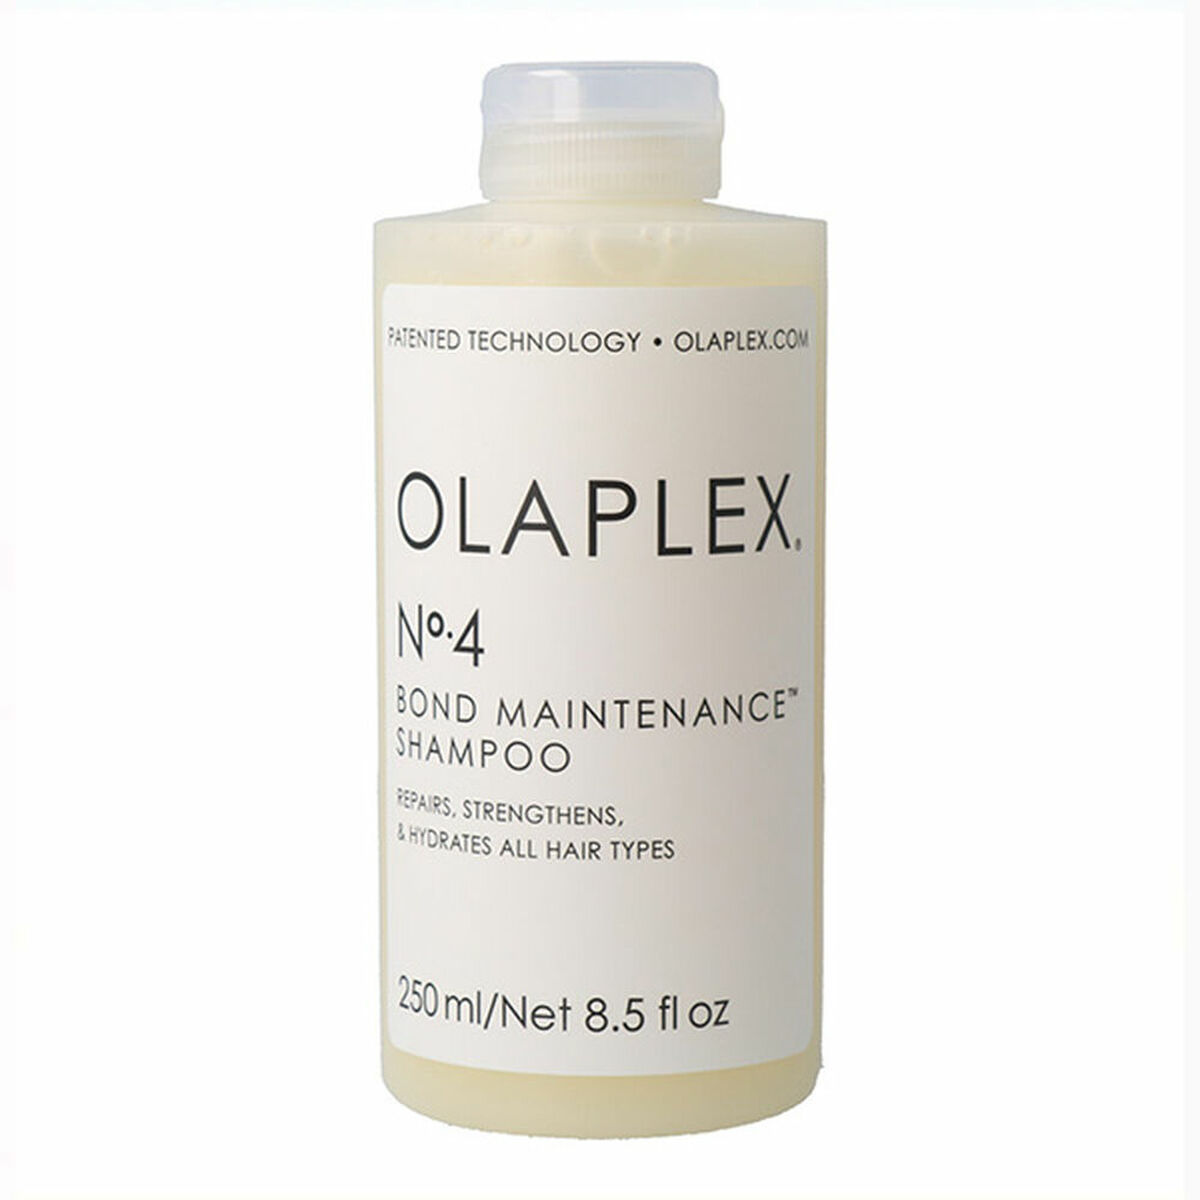 Shampoo Olaplex No. 4 Bond Maintenance 250 ml | shinehairclub.com